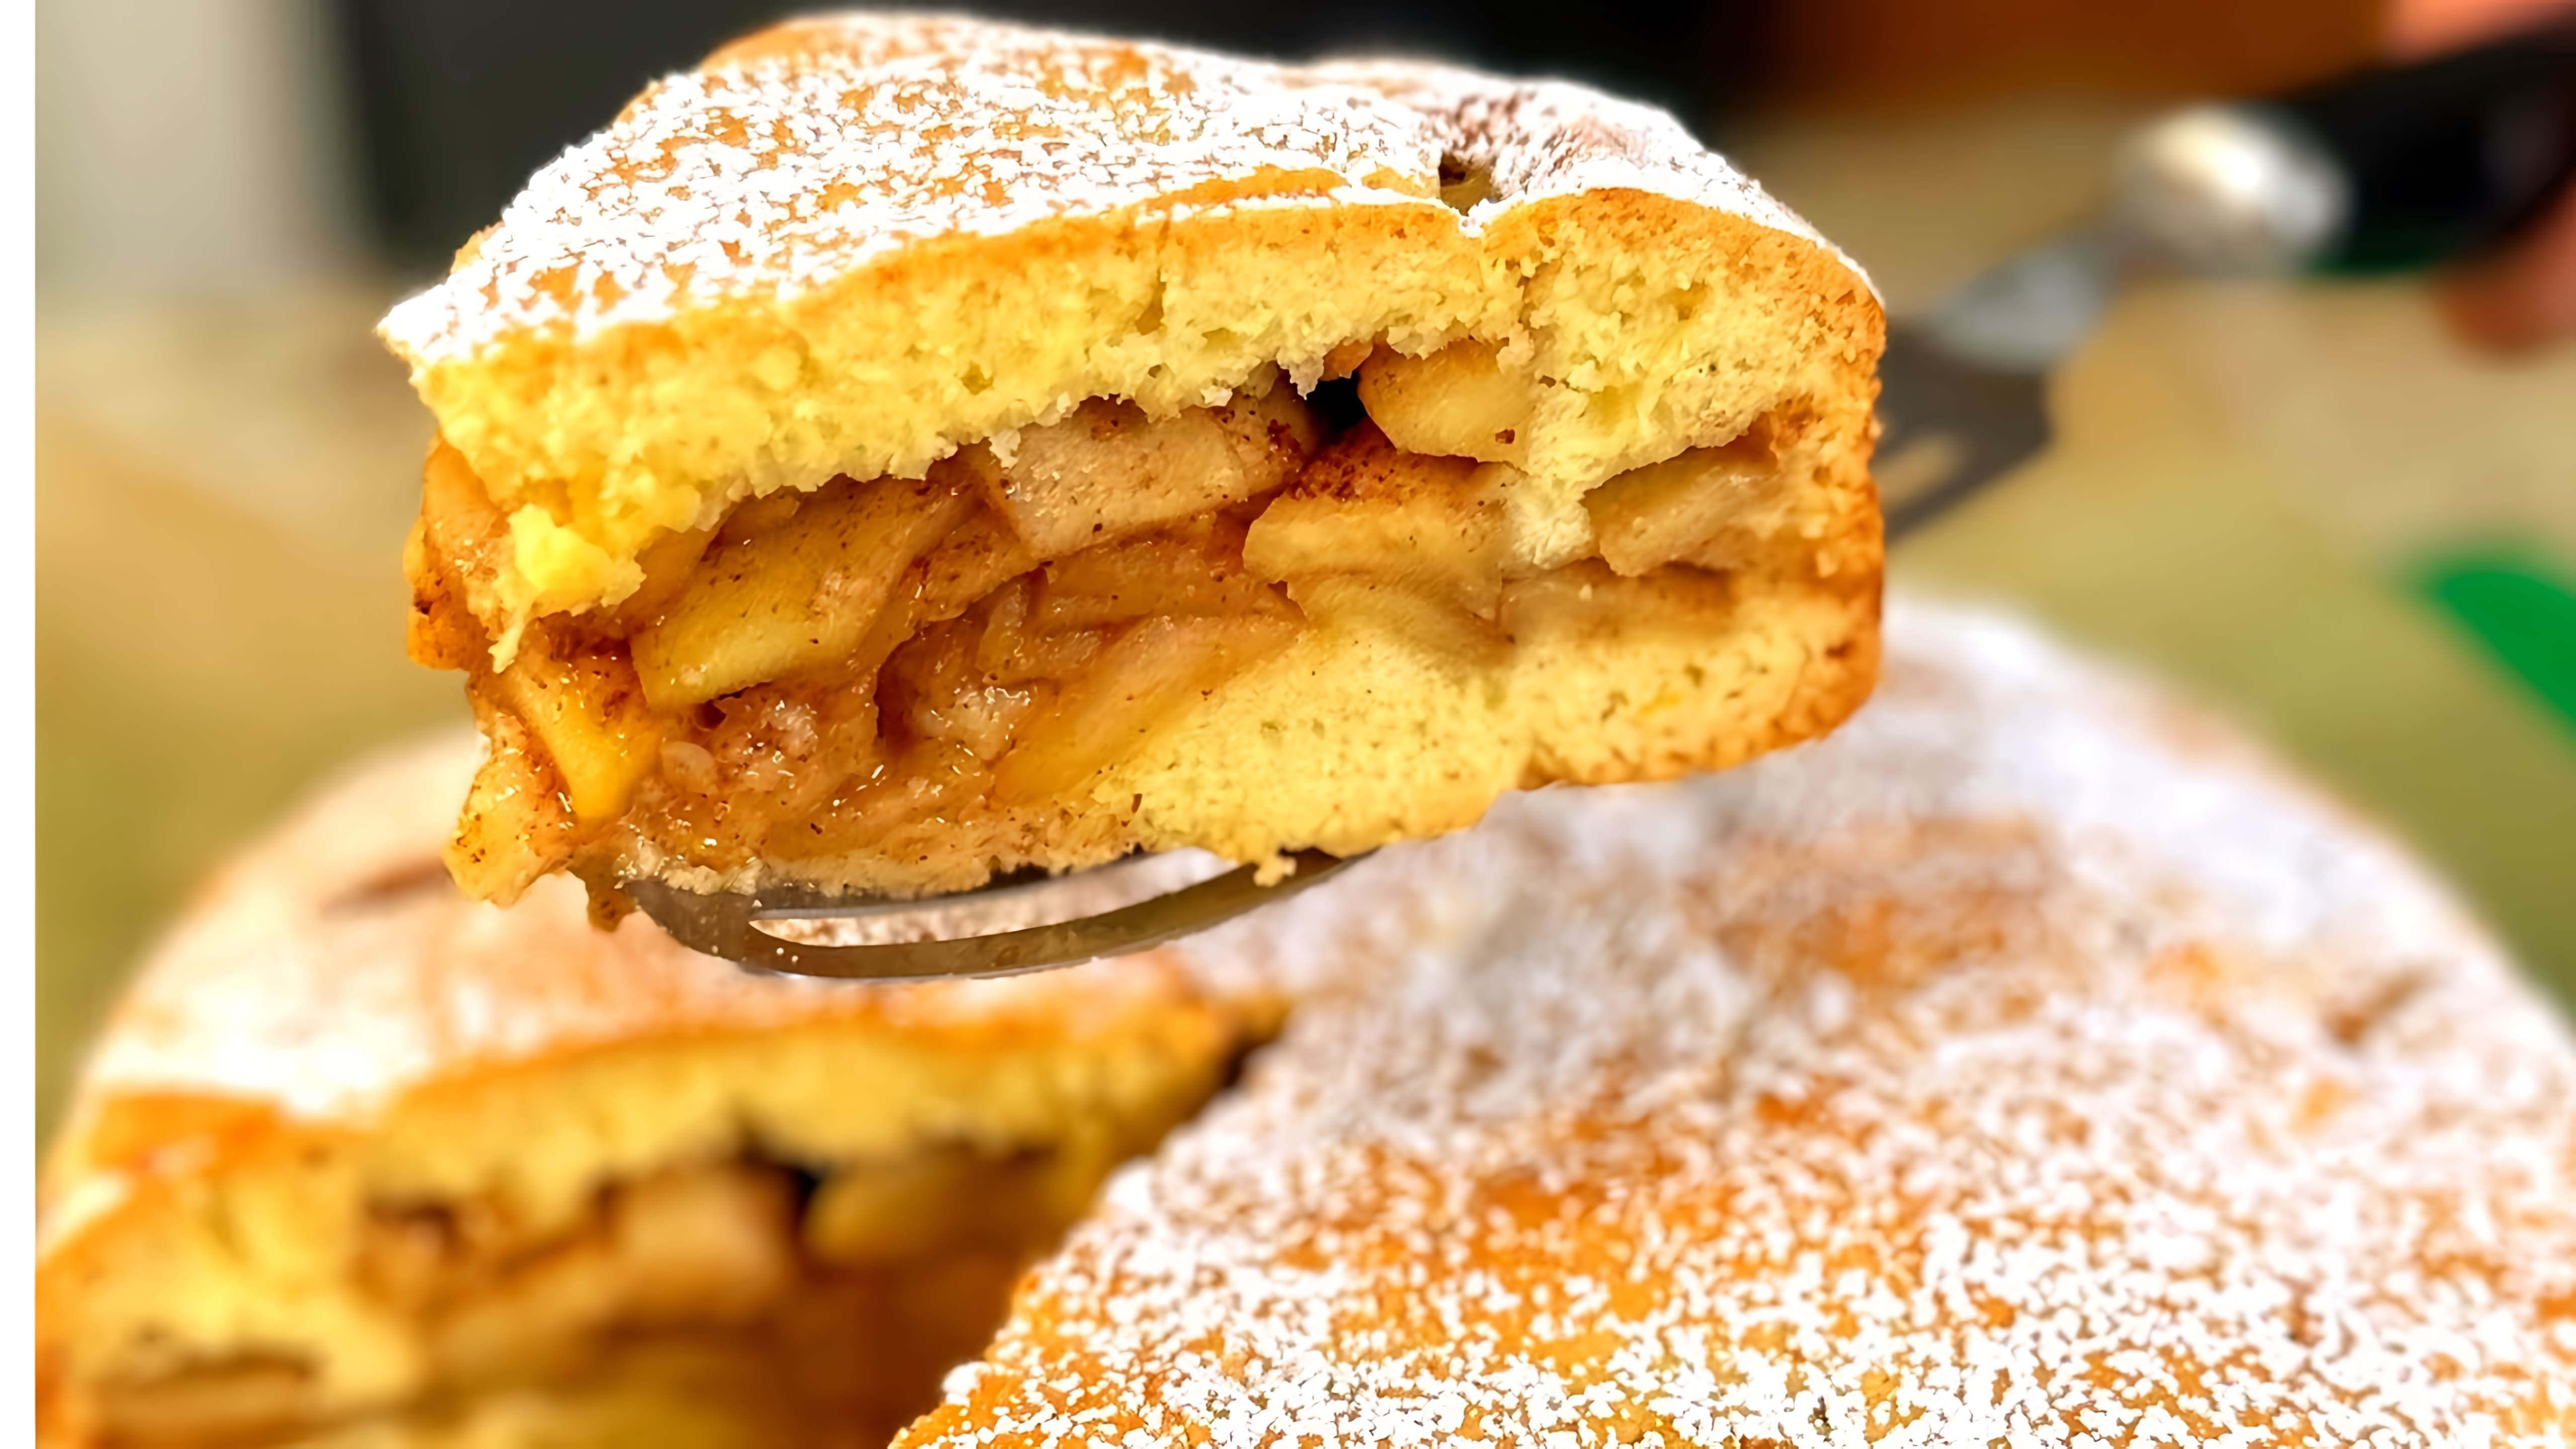 В этом видео демонстрируется рецепт приготовления яблочного пирога